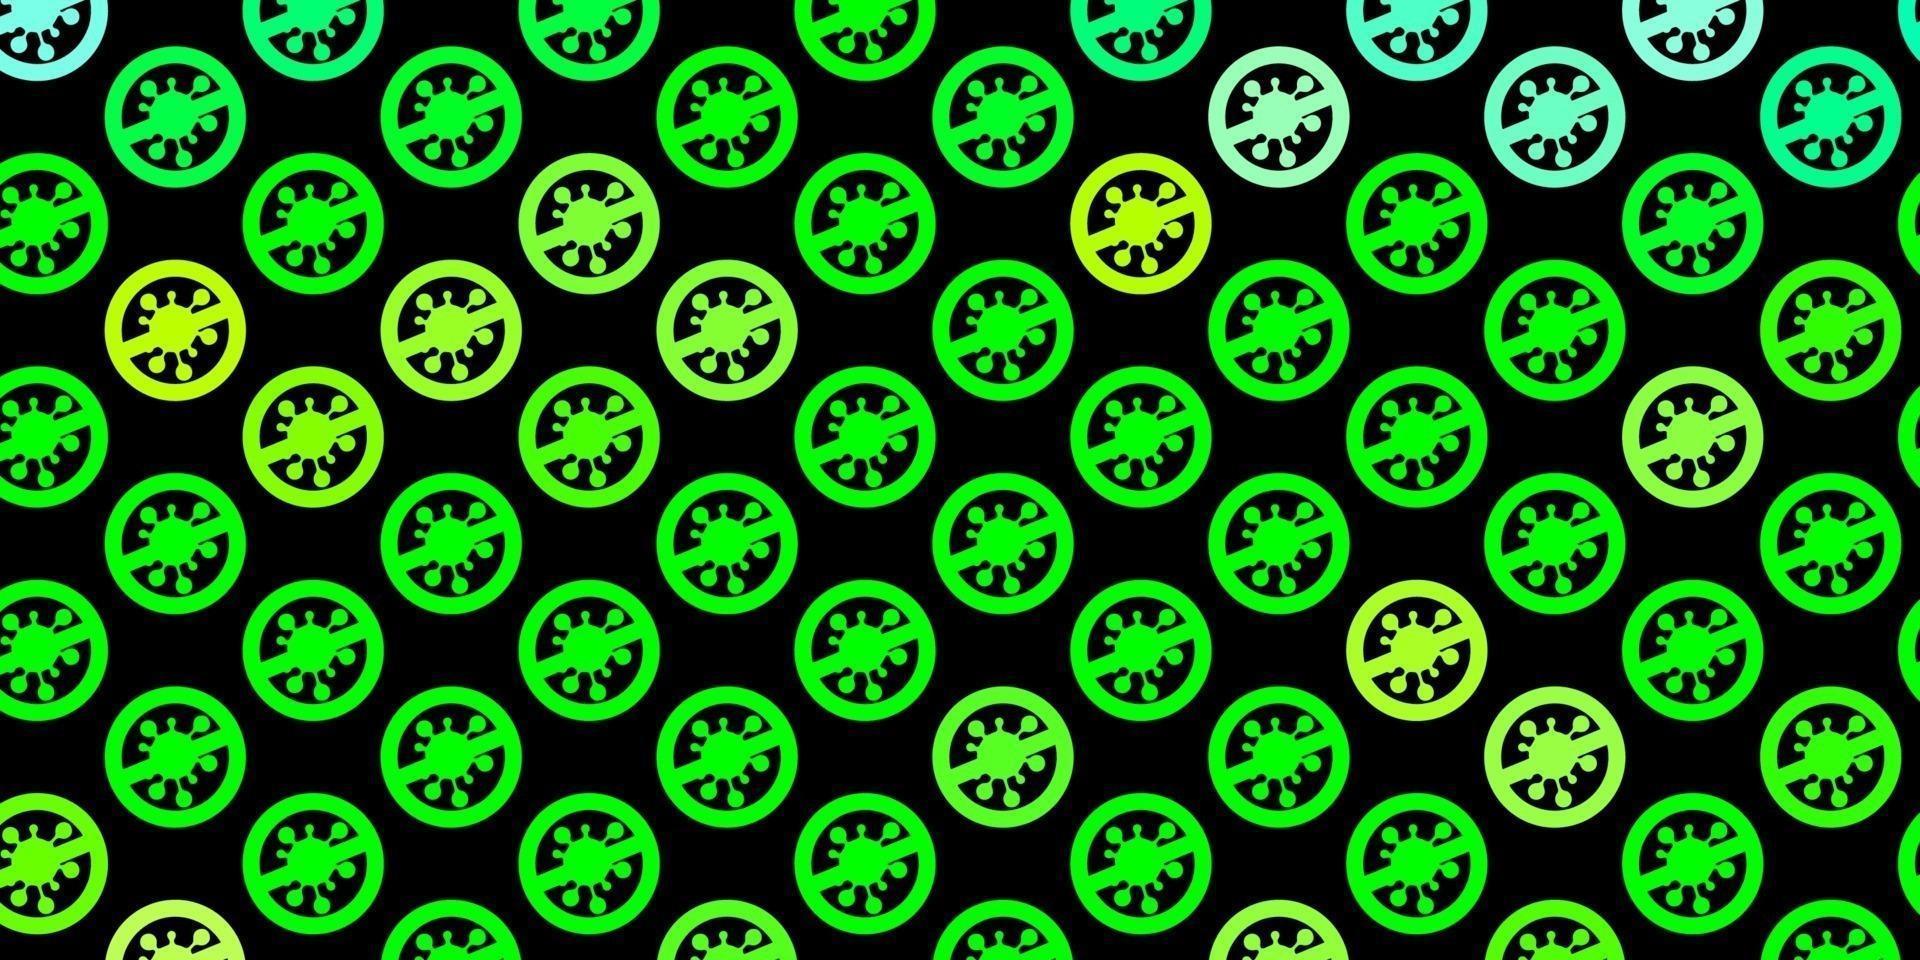 pano de fundo de vetor verde e amarelo escuro com símbolos de vírus.